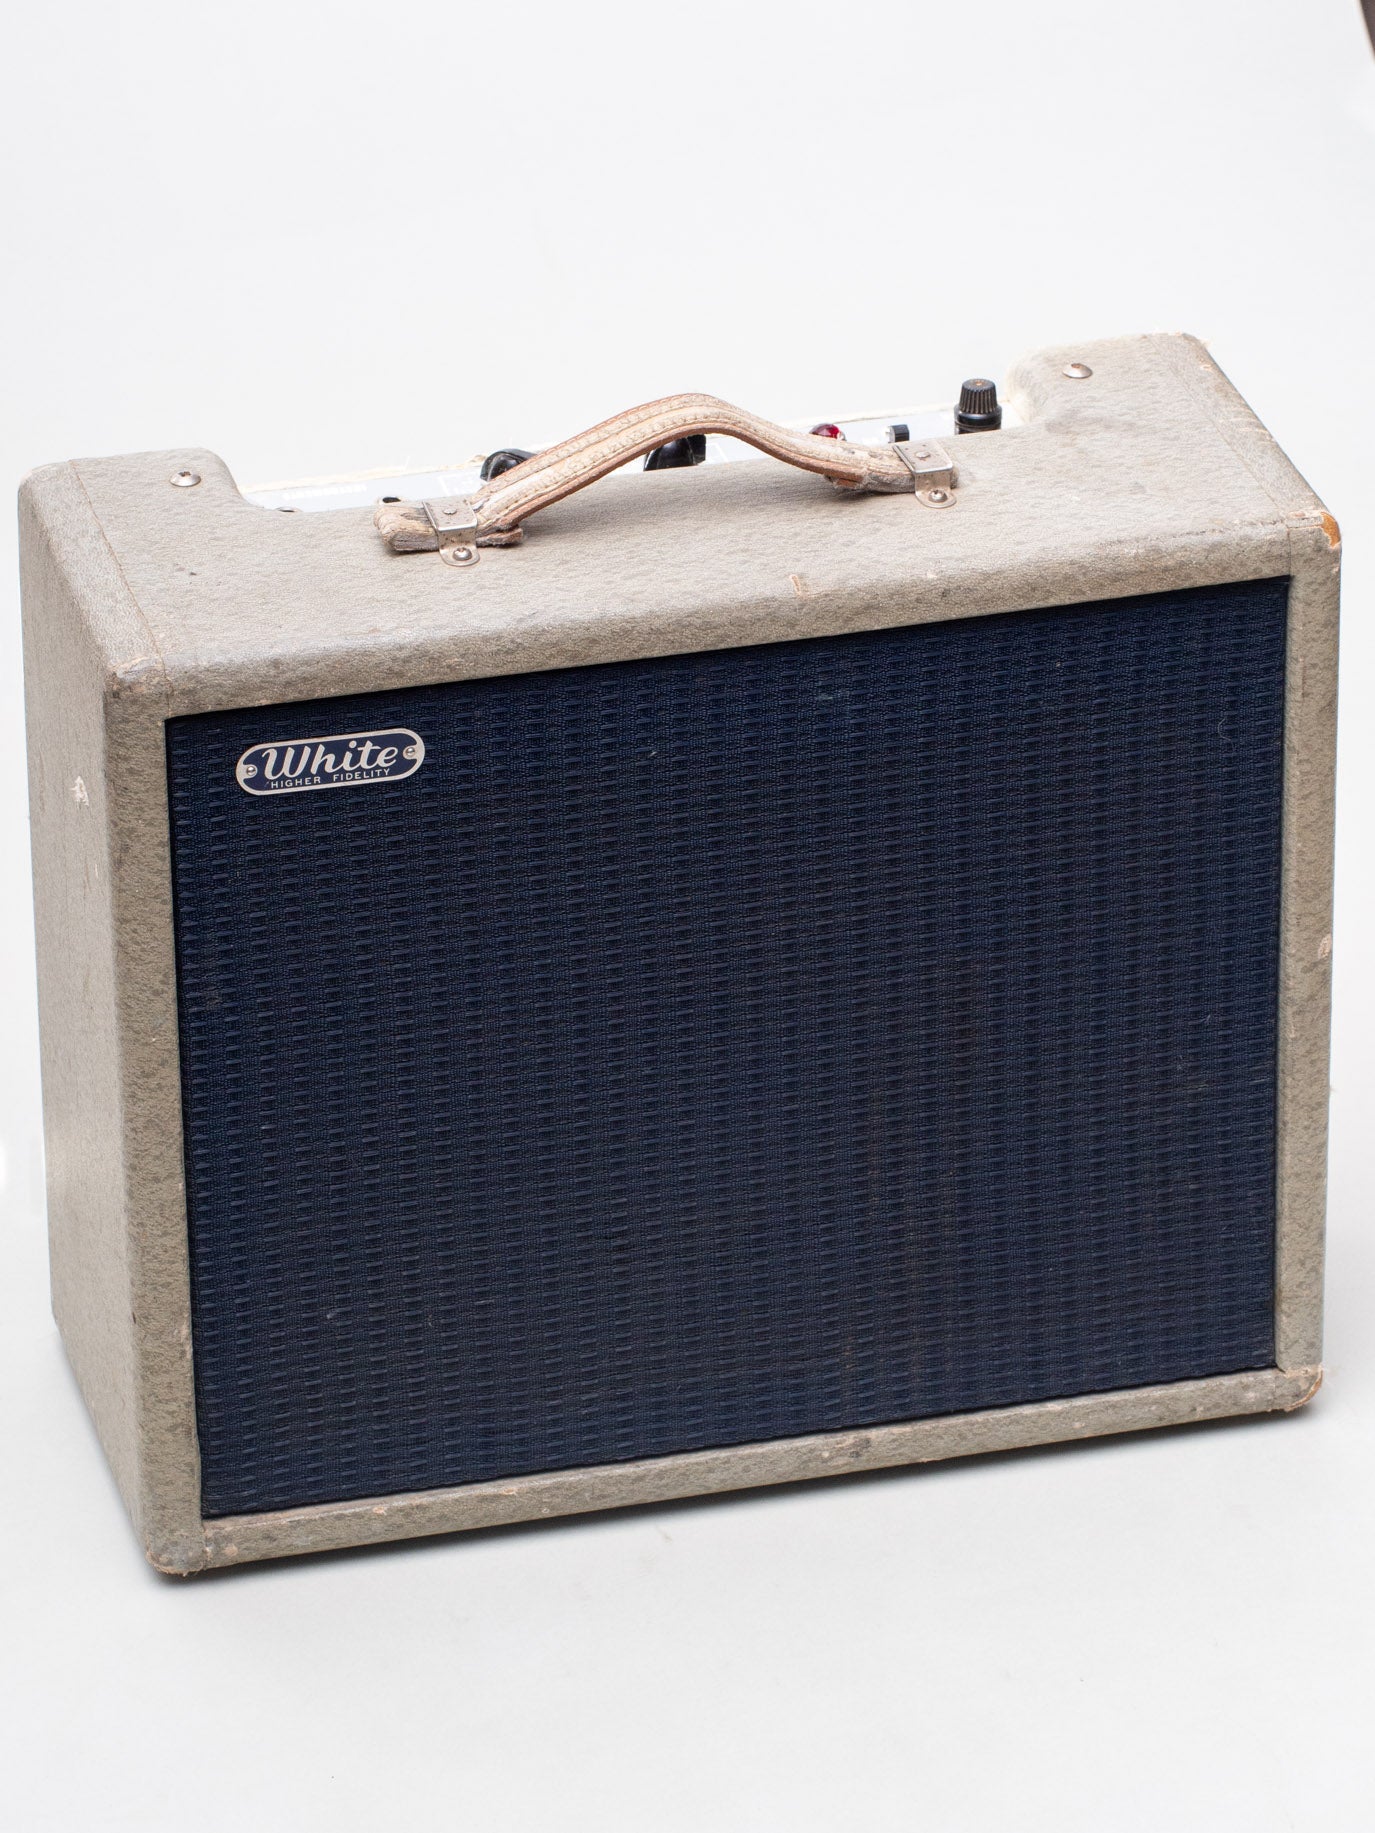 1962 Fender White Higher Fidelity Amplifier